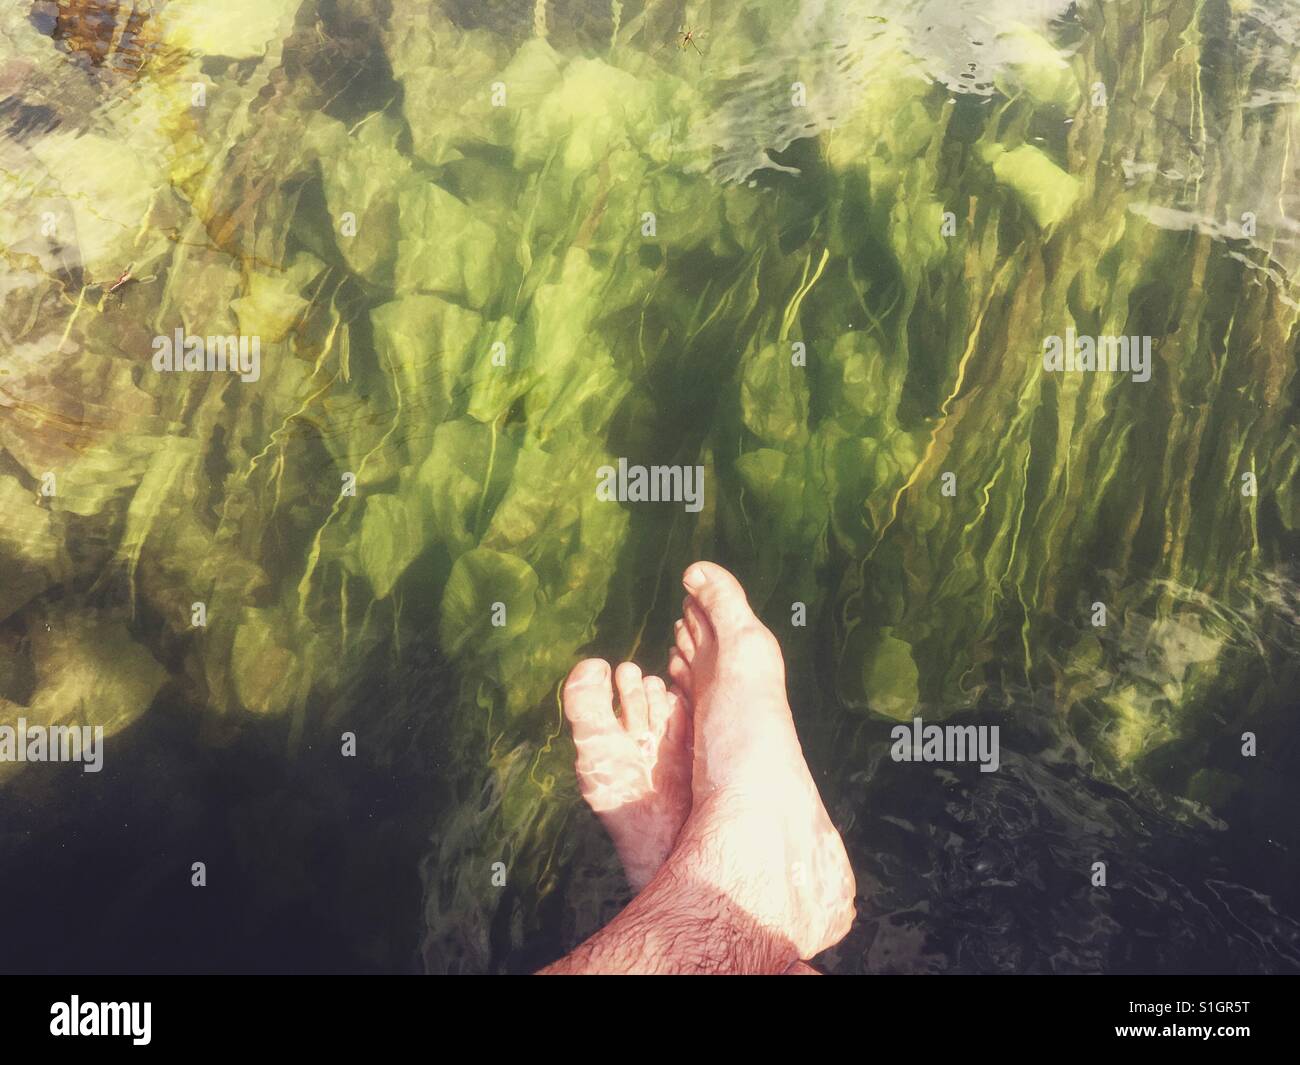 Piedini maschio in acqua con acqua verde impianti a fondo Foto Stock